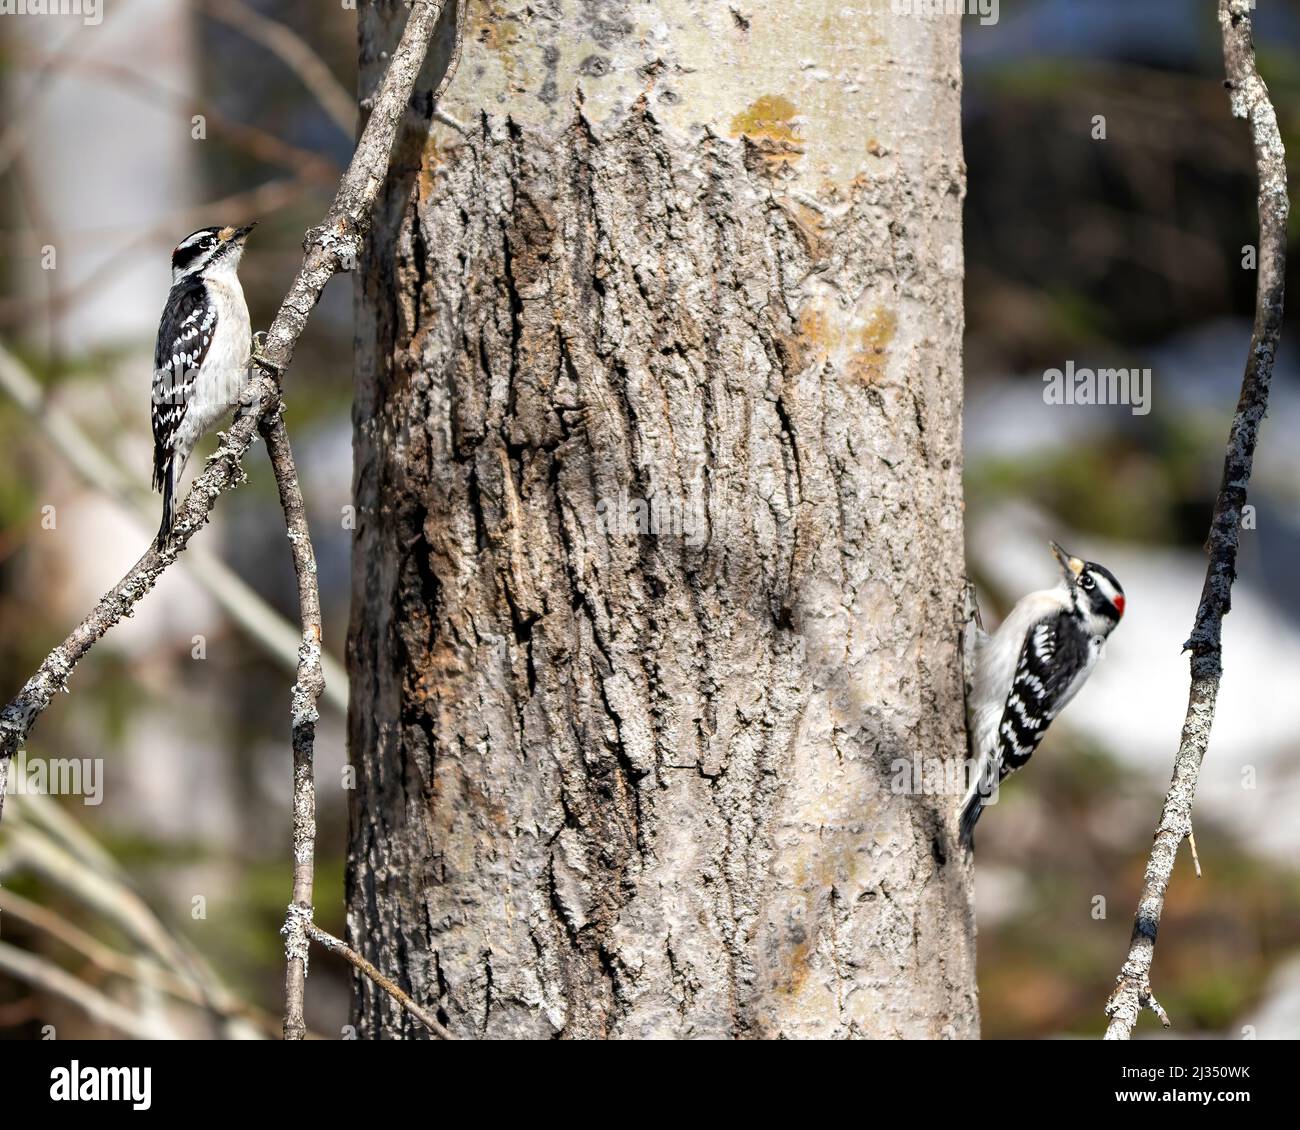 Un couple de pics boisés sur un tronc d'arbre avec un arrière-plan flou dans leur environnement et leur habitat entourant le plumage de plumes blanches et noires Banque D'Images